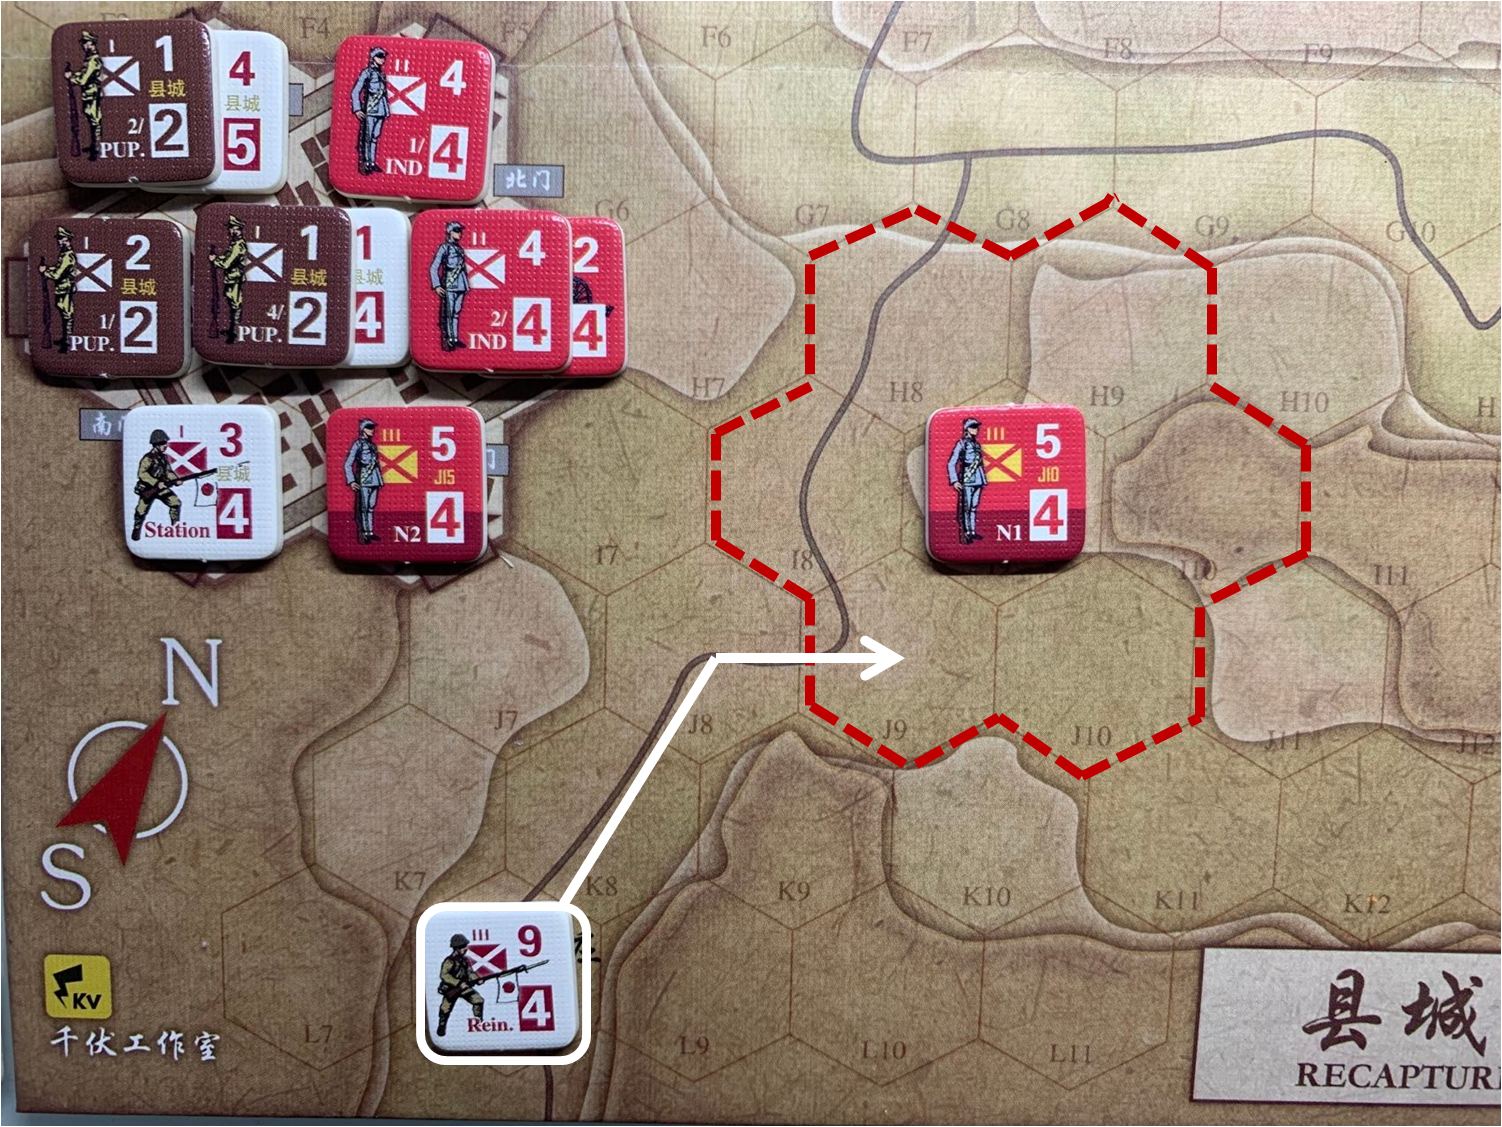 第一回合赵庄方向（L8）日军增援部队对于移动命令3的执行计划